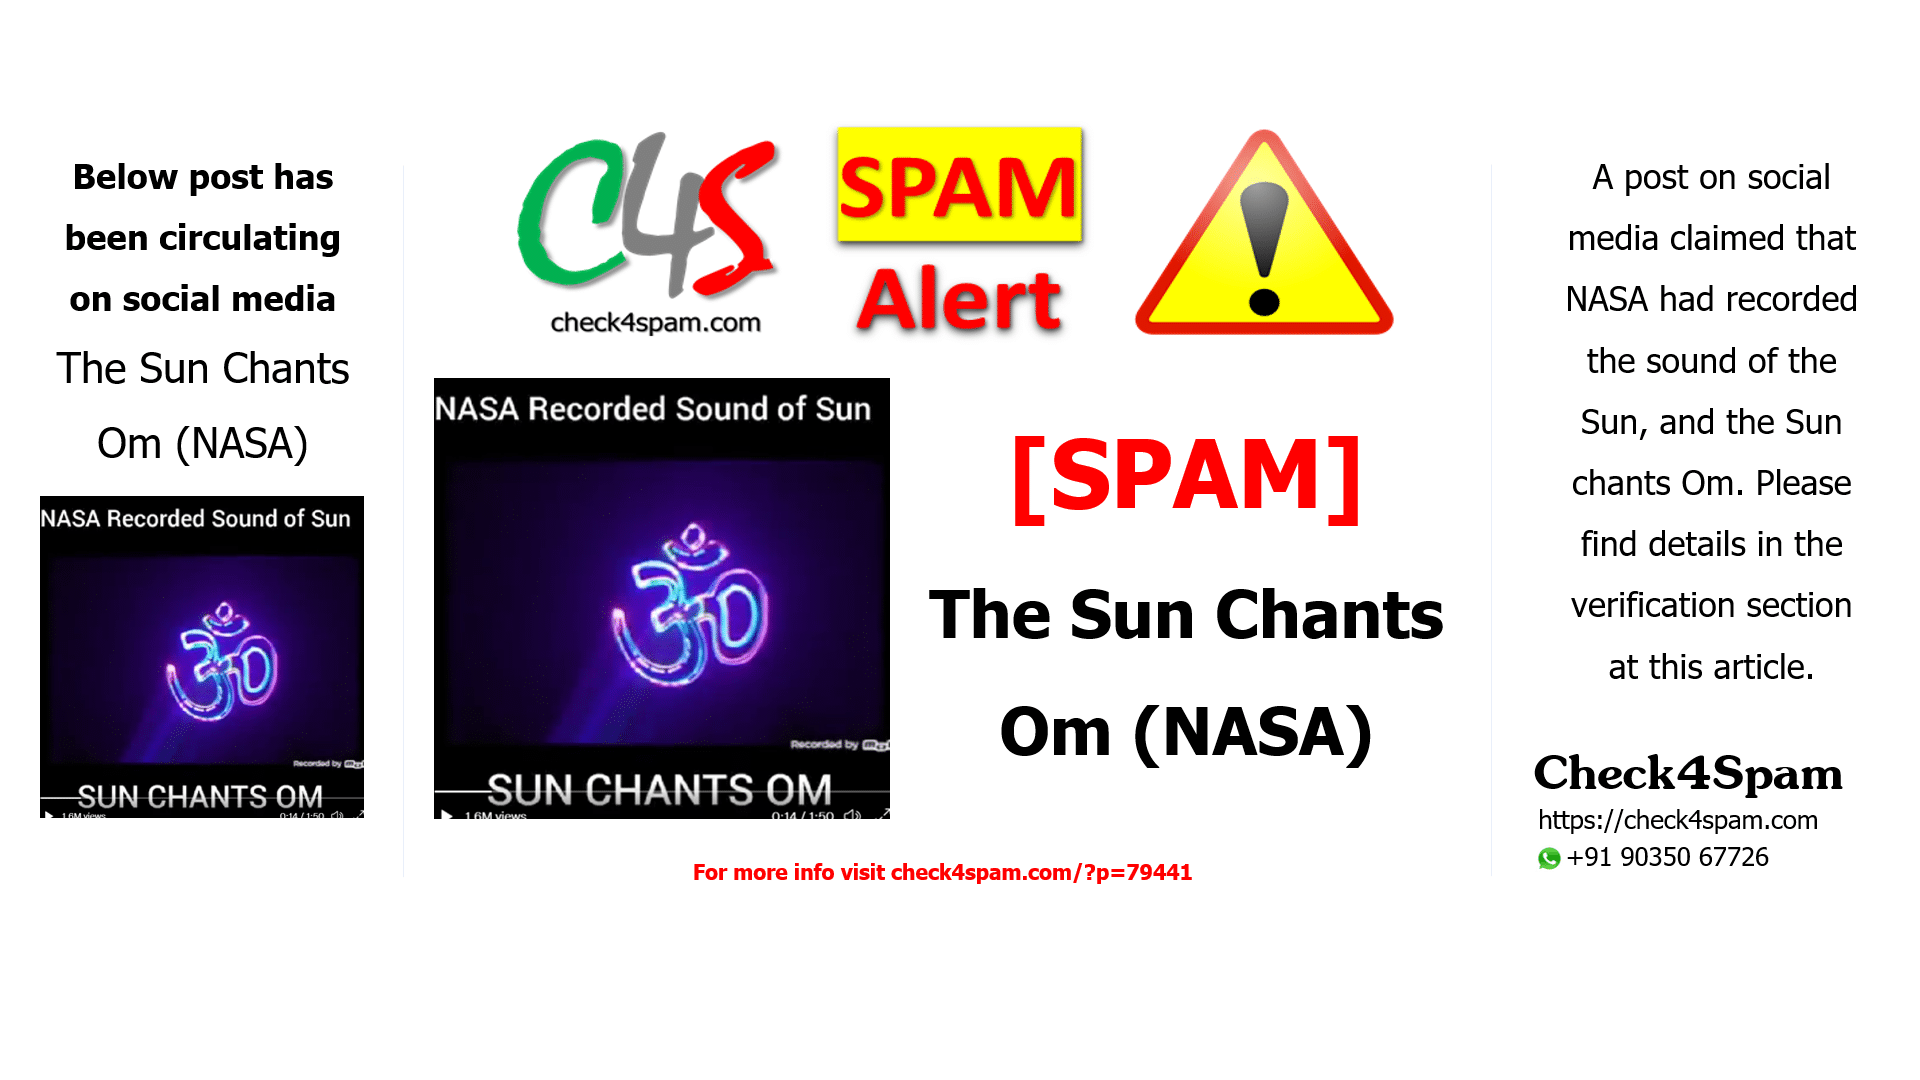 The Sun Chants Om (NASA)